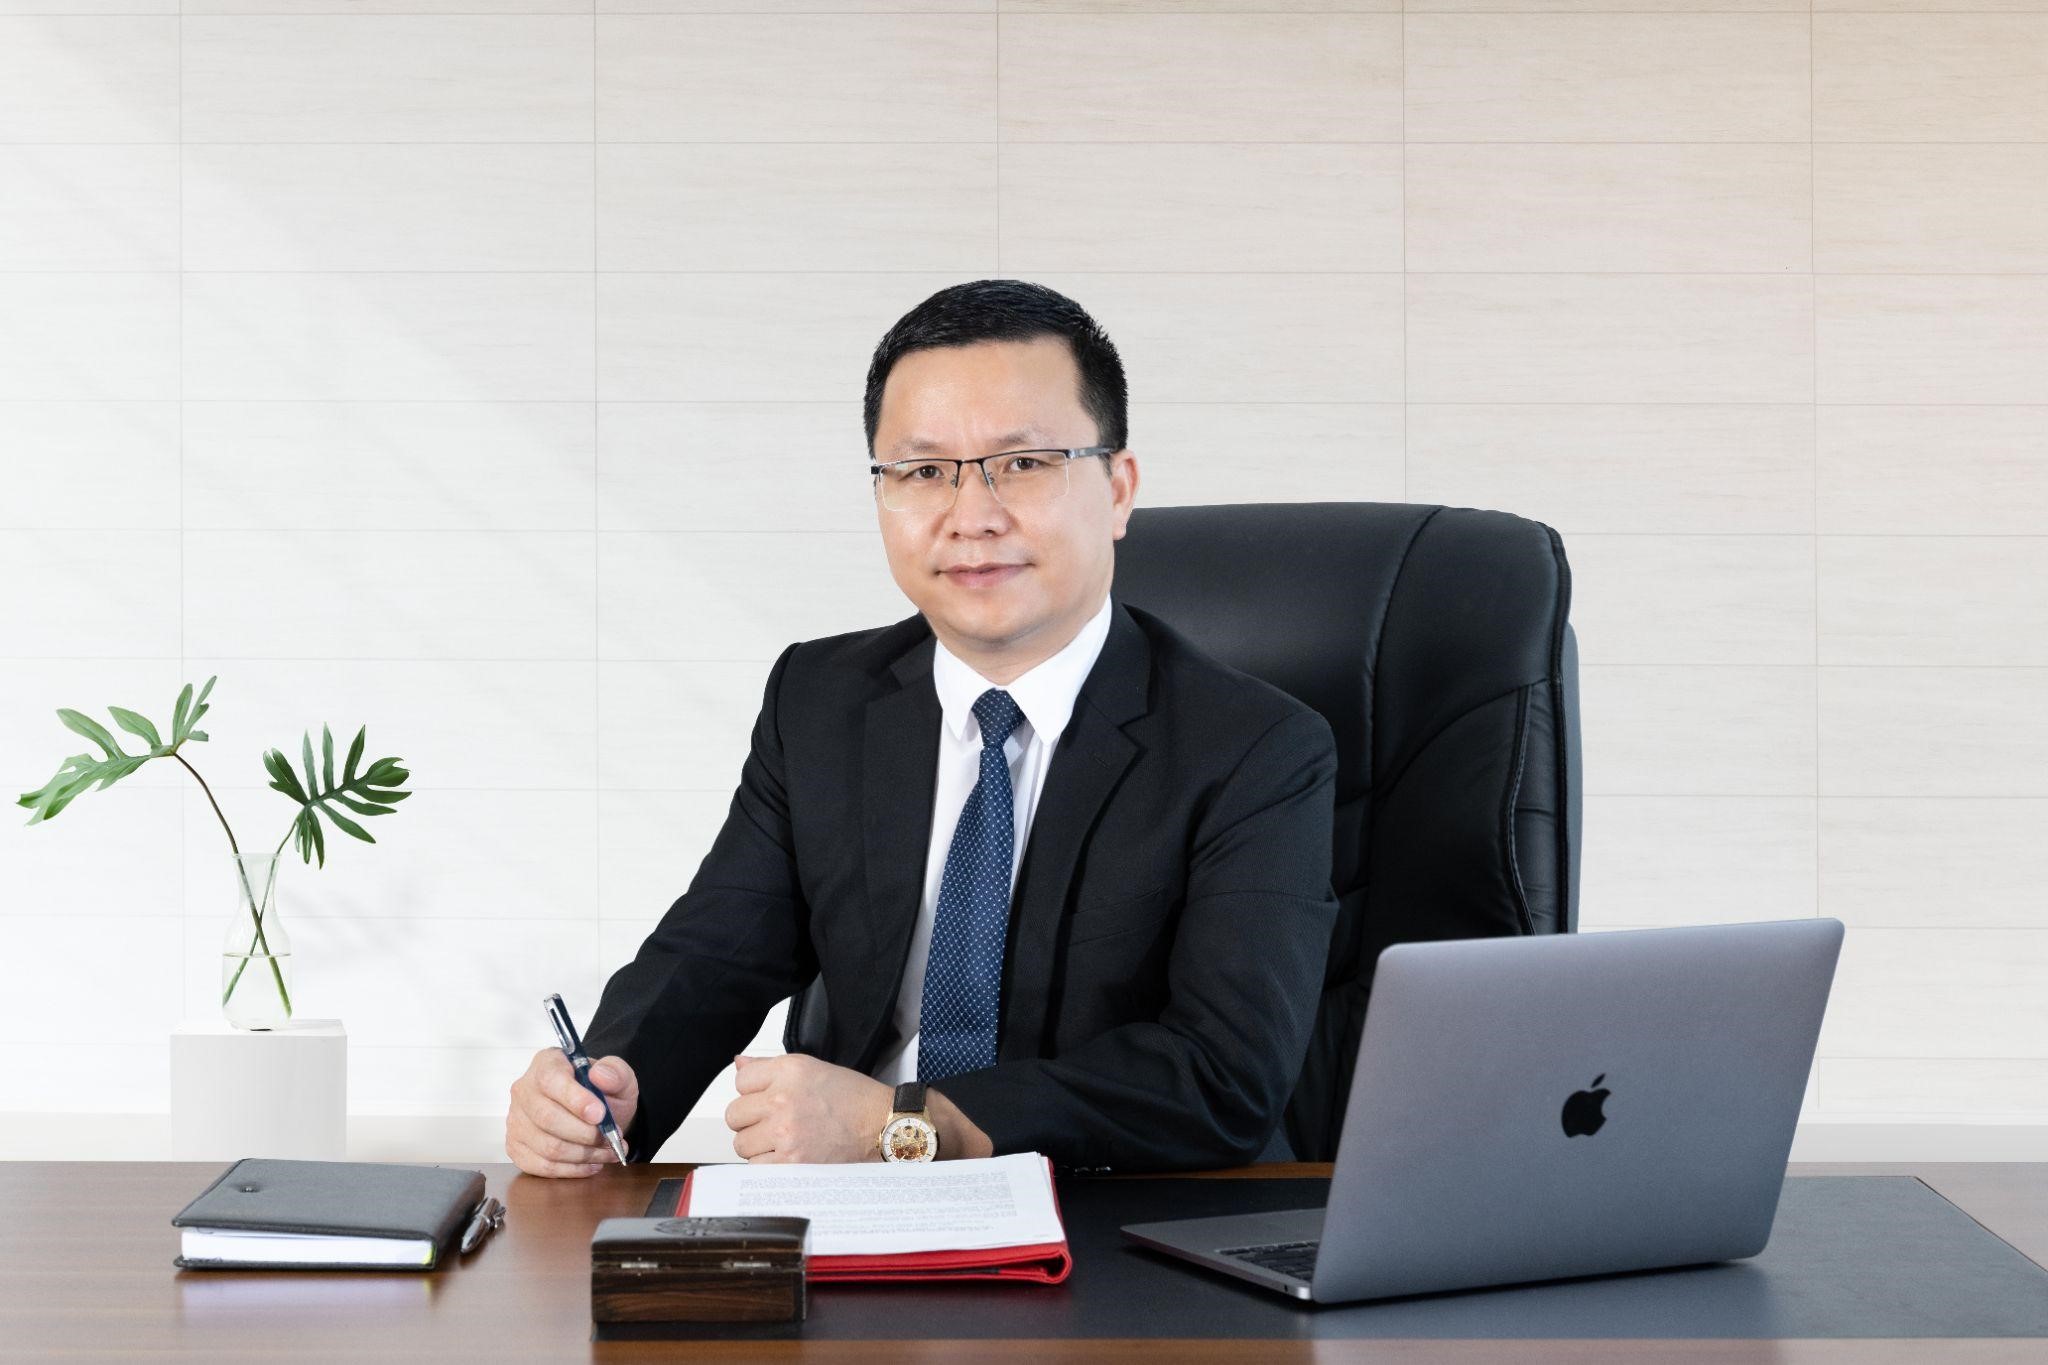 Cần biết - Nền tảng tuyển dụng Job3s.vn của CEO Tony Vũ được vinh danh gây bão mạng xã hội với lượng người dùng tăng chóng mặt đến việc giành giải thưởng lớn Châu Á